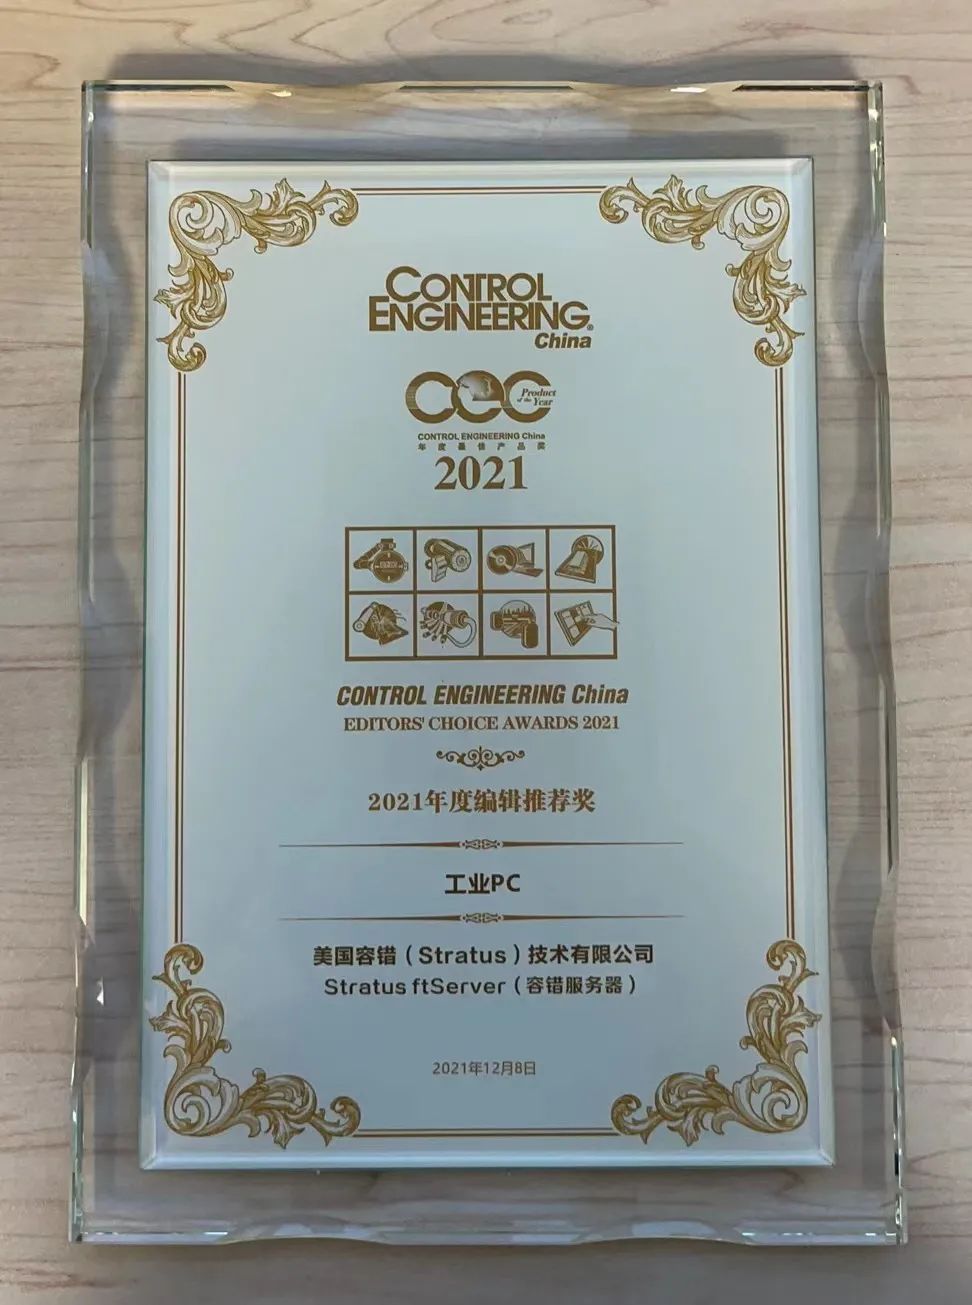 Stratus榮獲CEC 2021年度編輯推薦獎